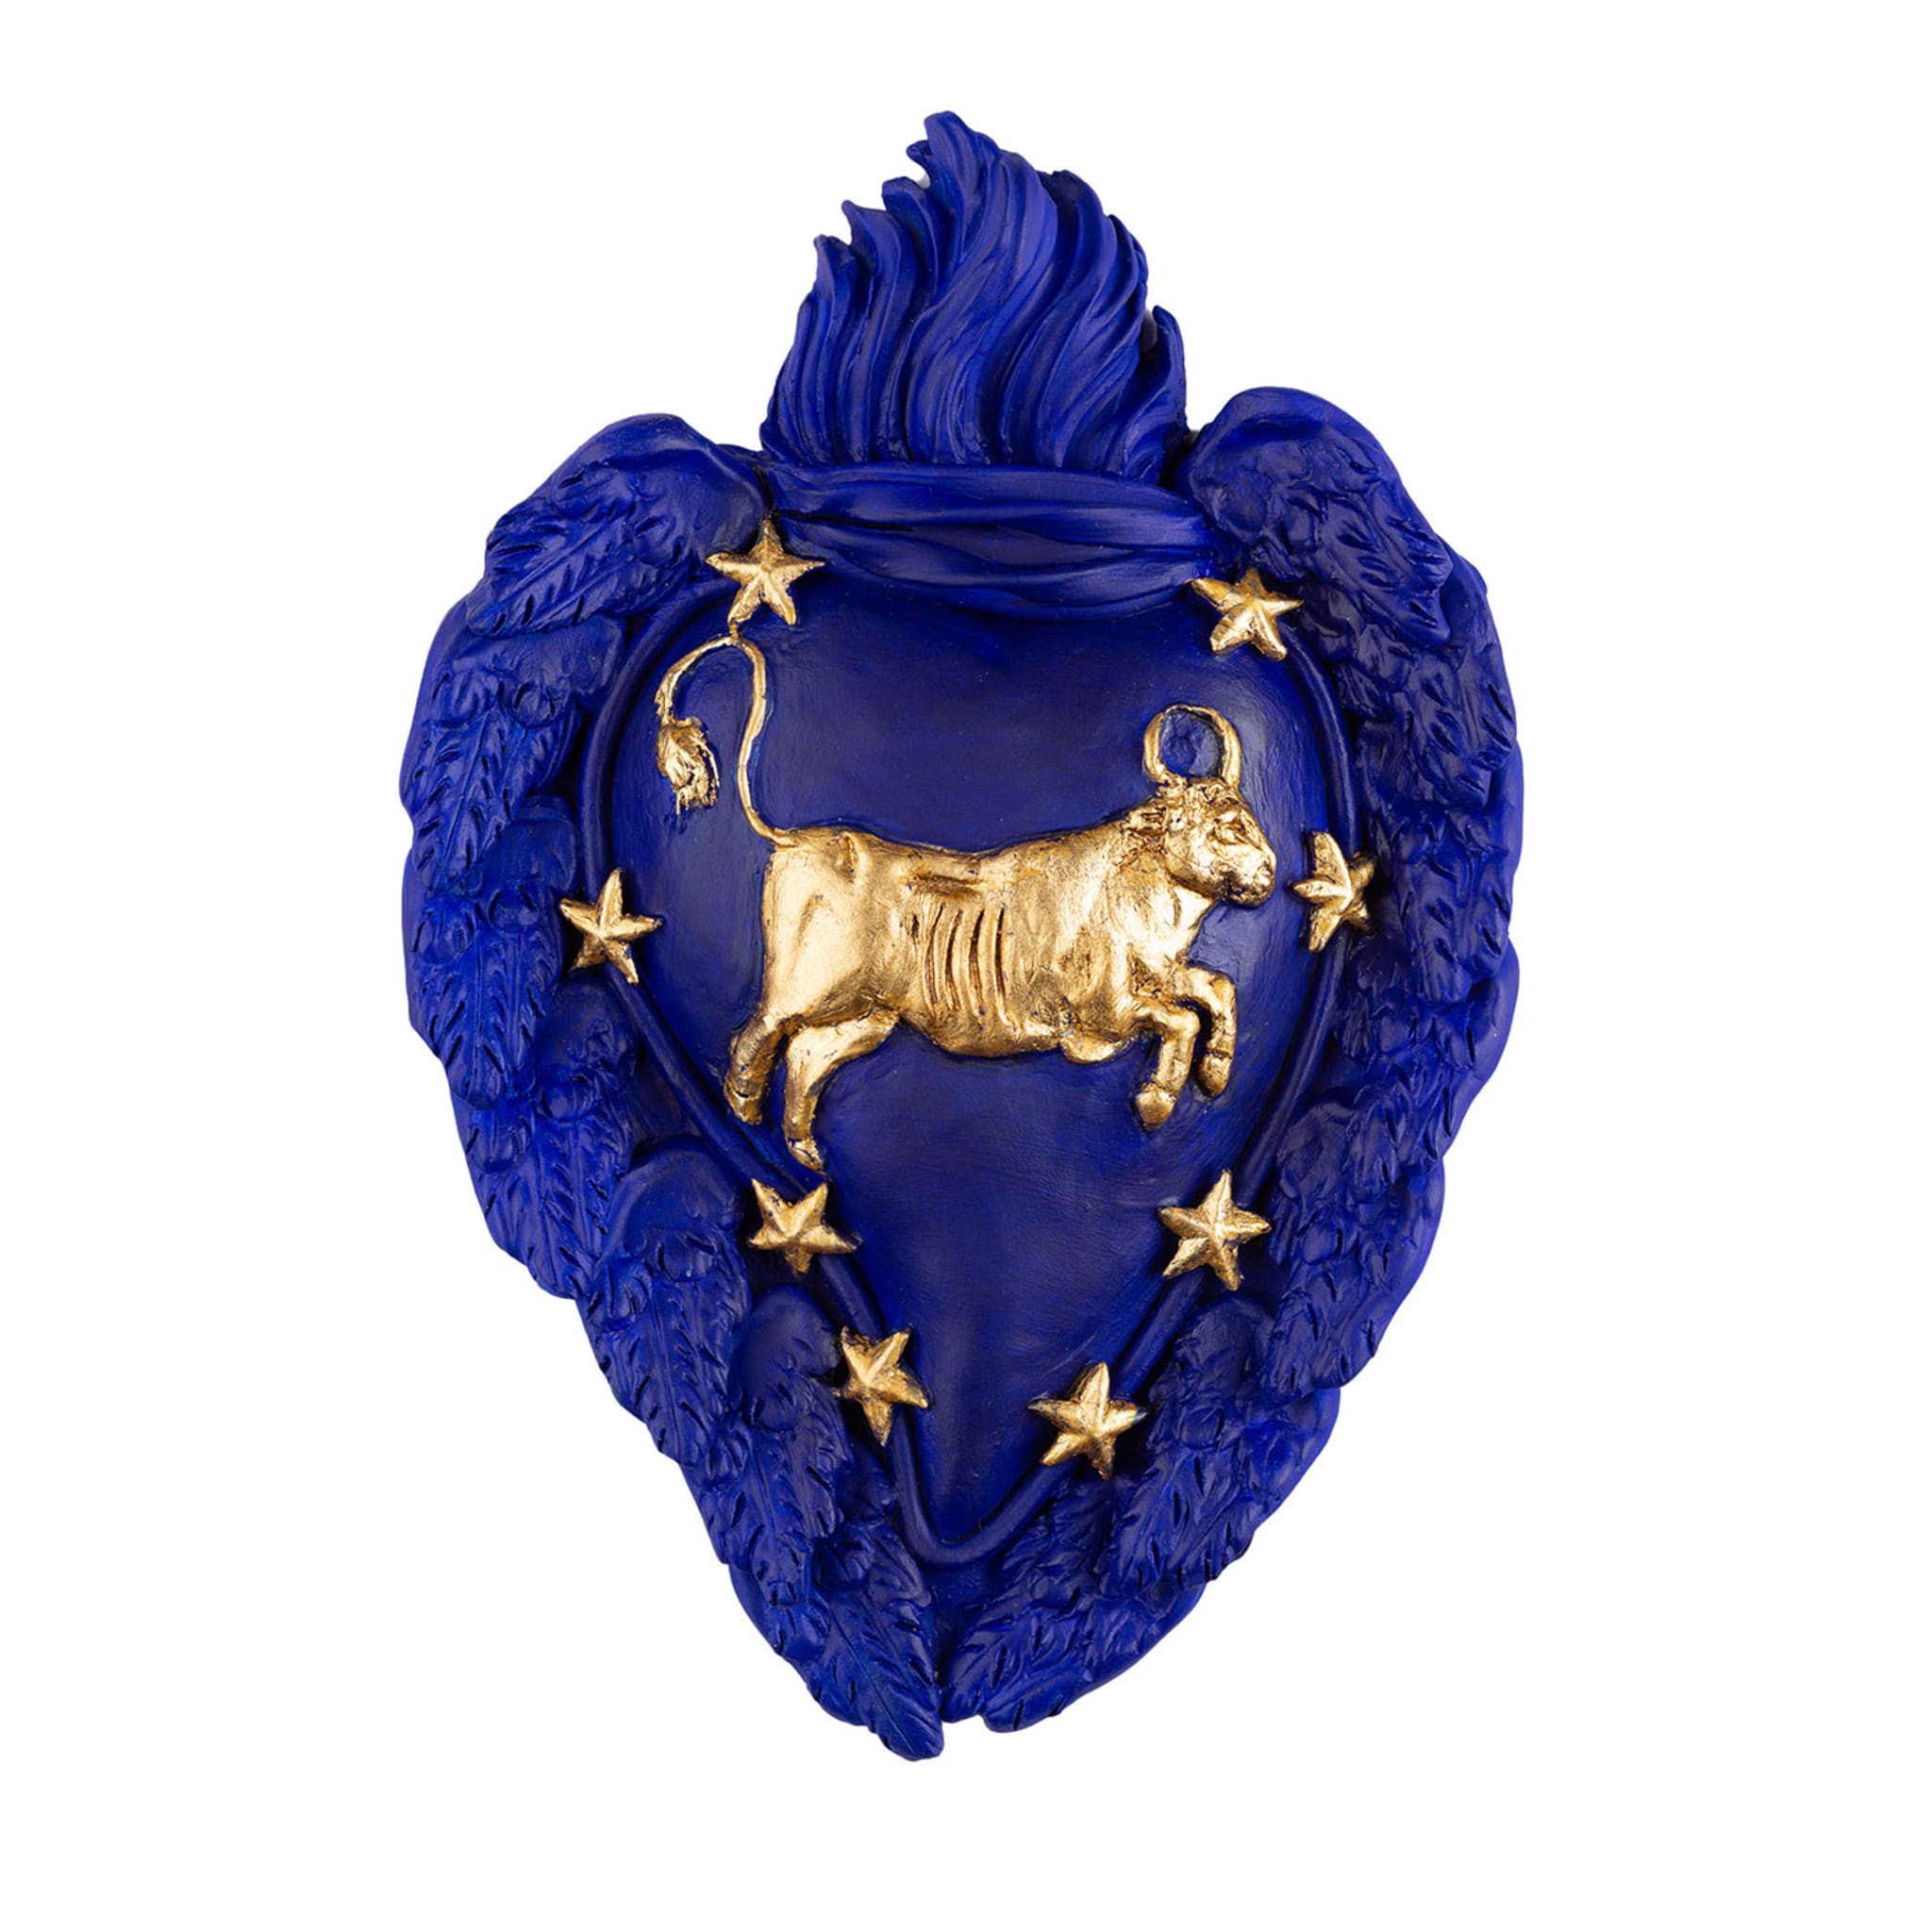 Zodiaco Taurus Ceramic Heart - Main view